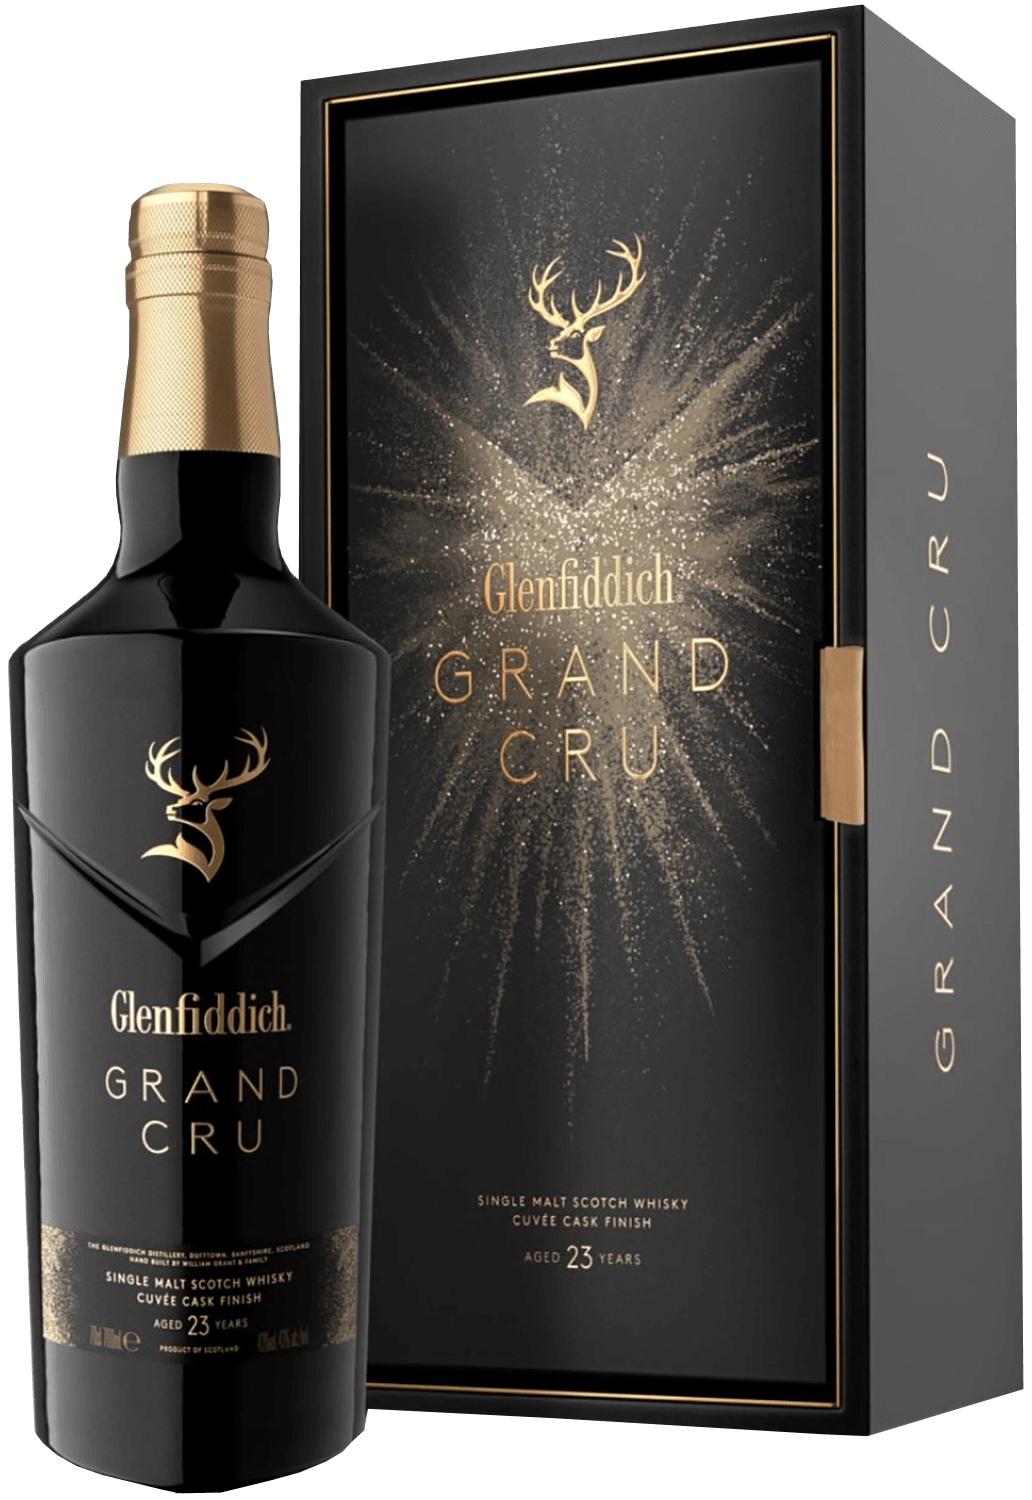 Glenfiddich Grand Cru 23 y.o. Single Malt Scotch Whisky (gift box) glenfiddich project хх single malt scotch whisky gift box